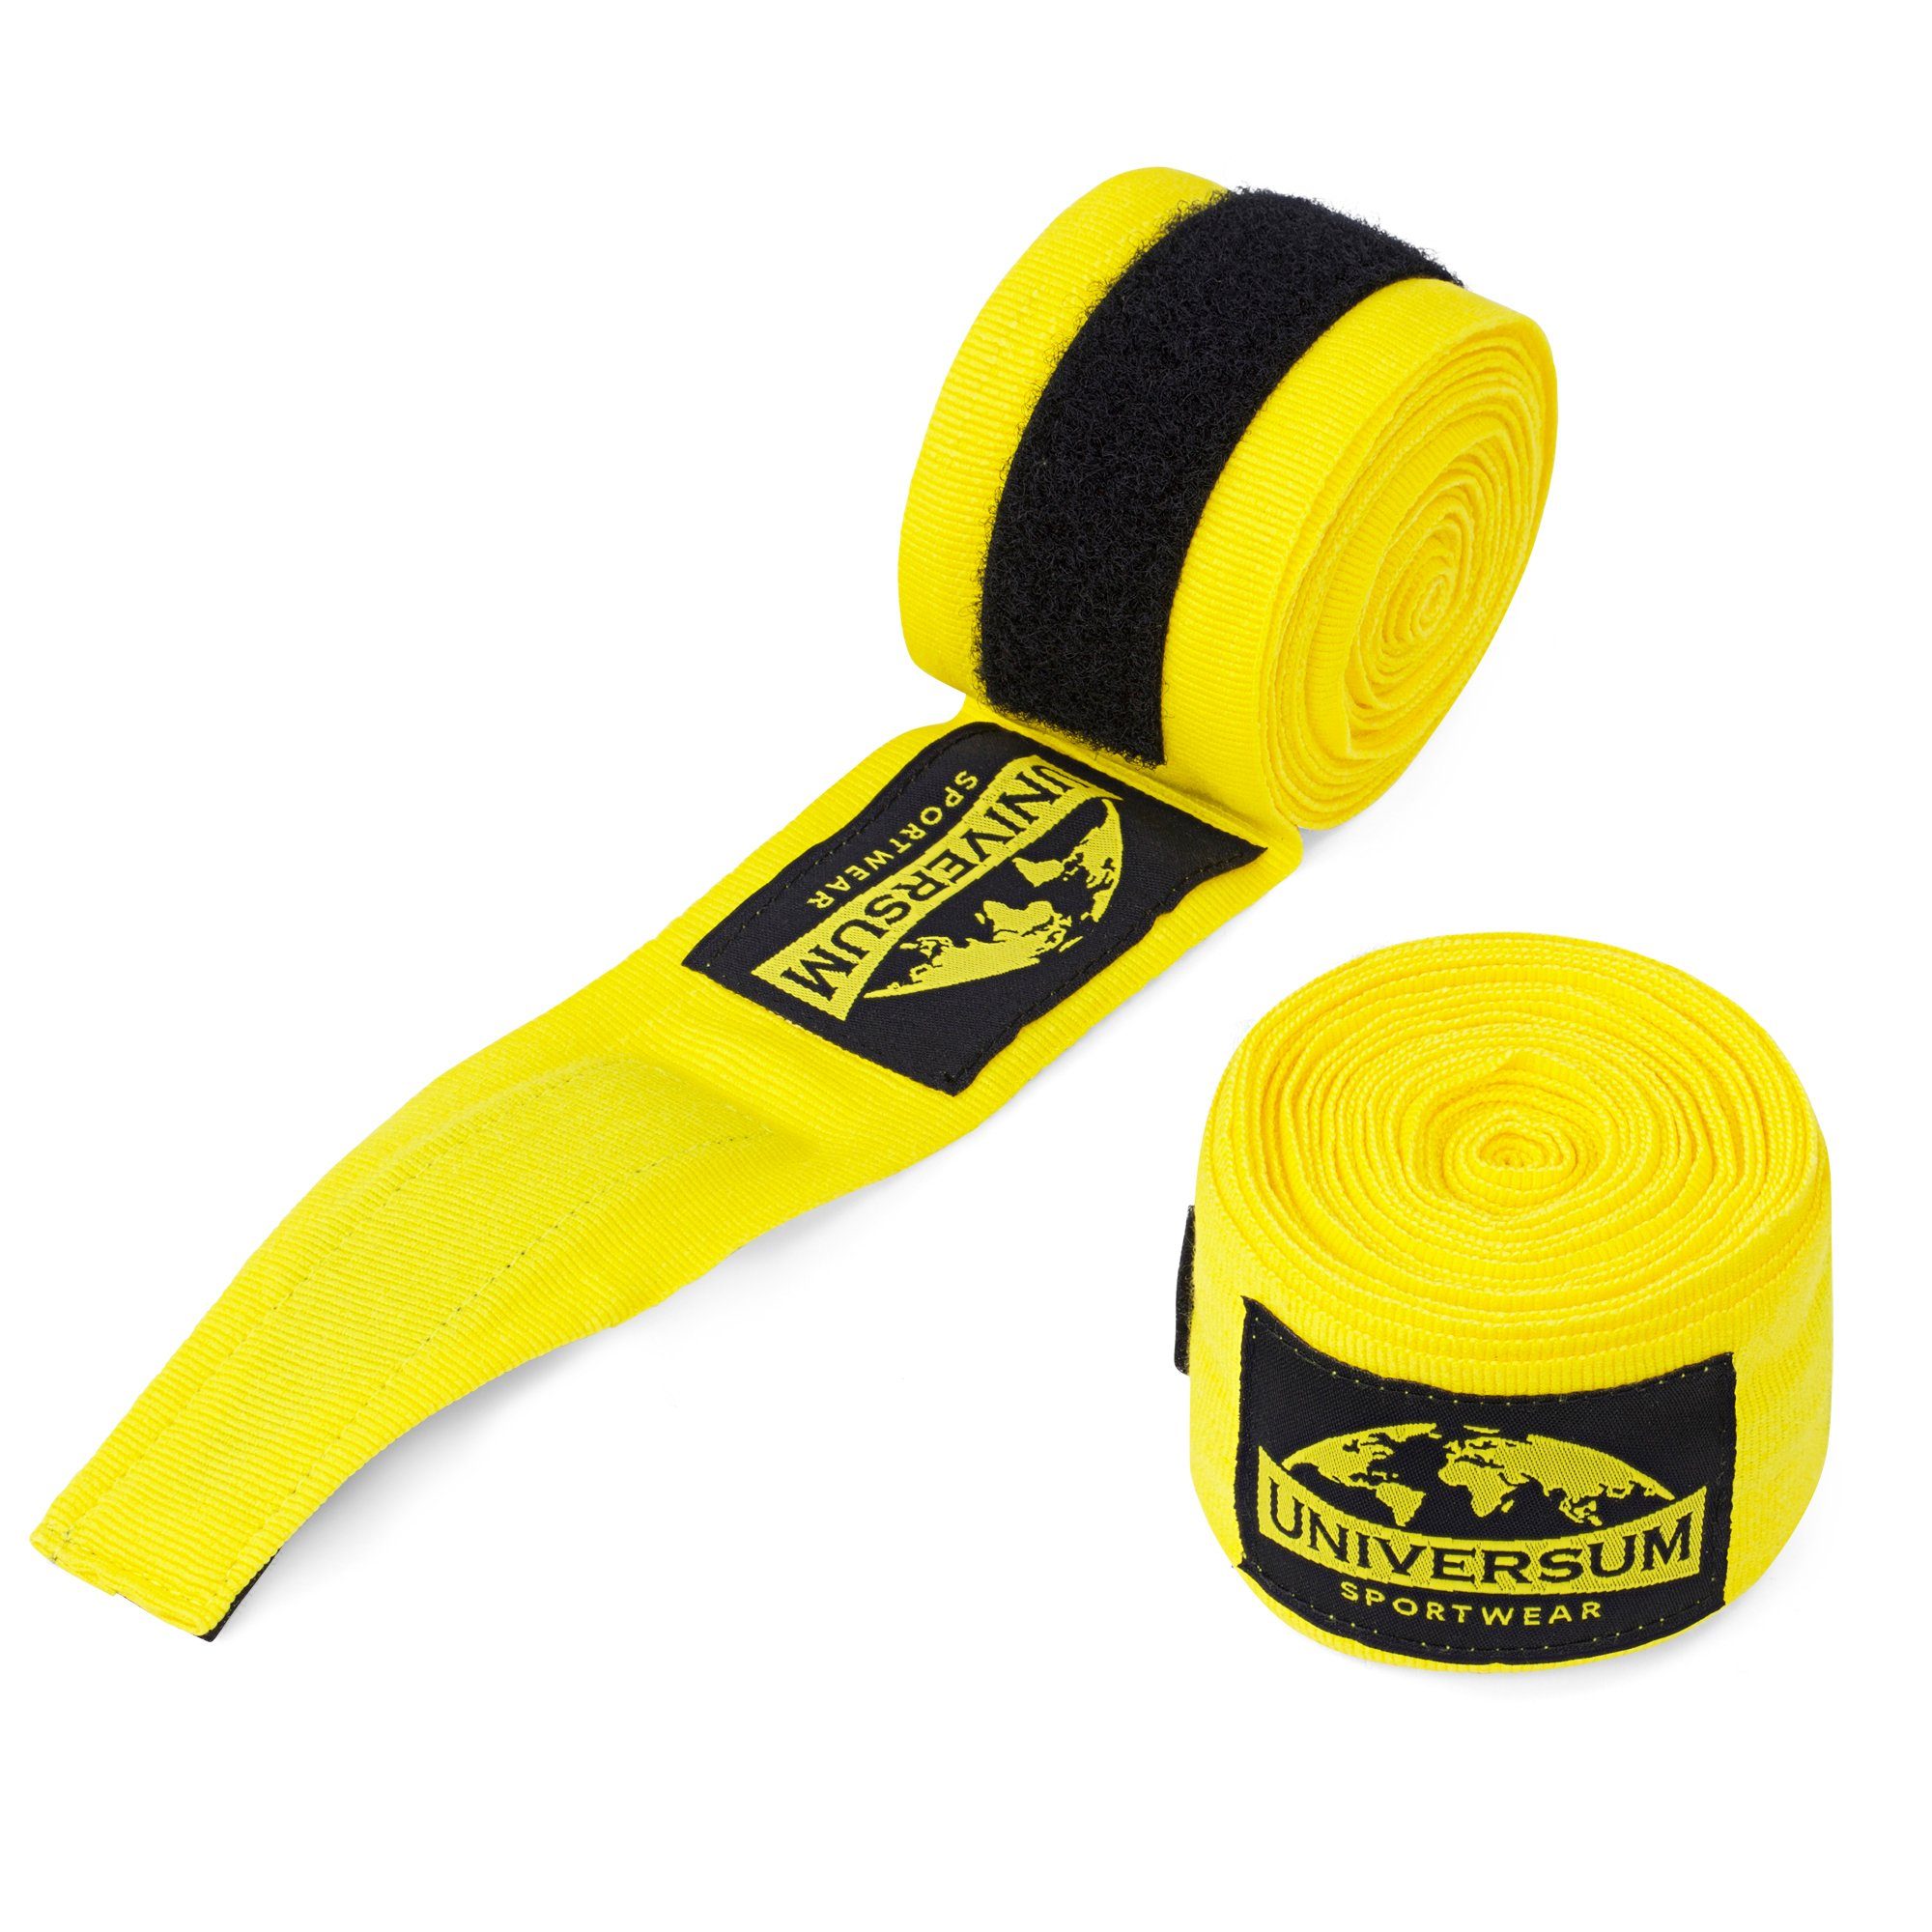 Universum Sportwear Boxbandagen Handgelenk Bandage, langen mit Klettverschluss Gelb-Schwarz